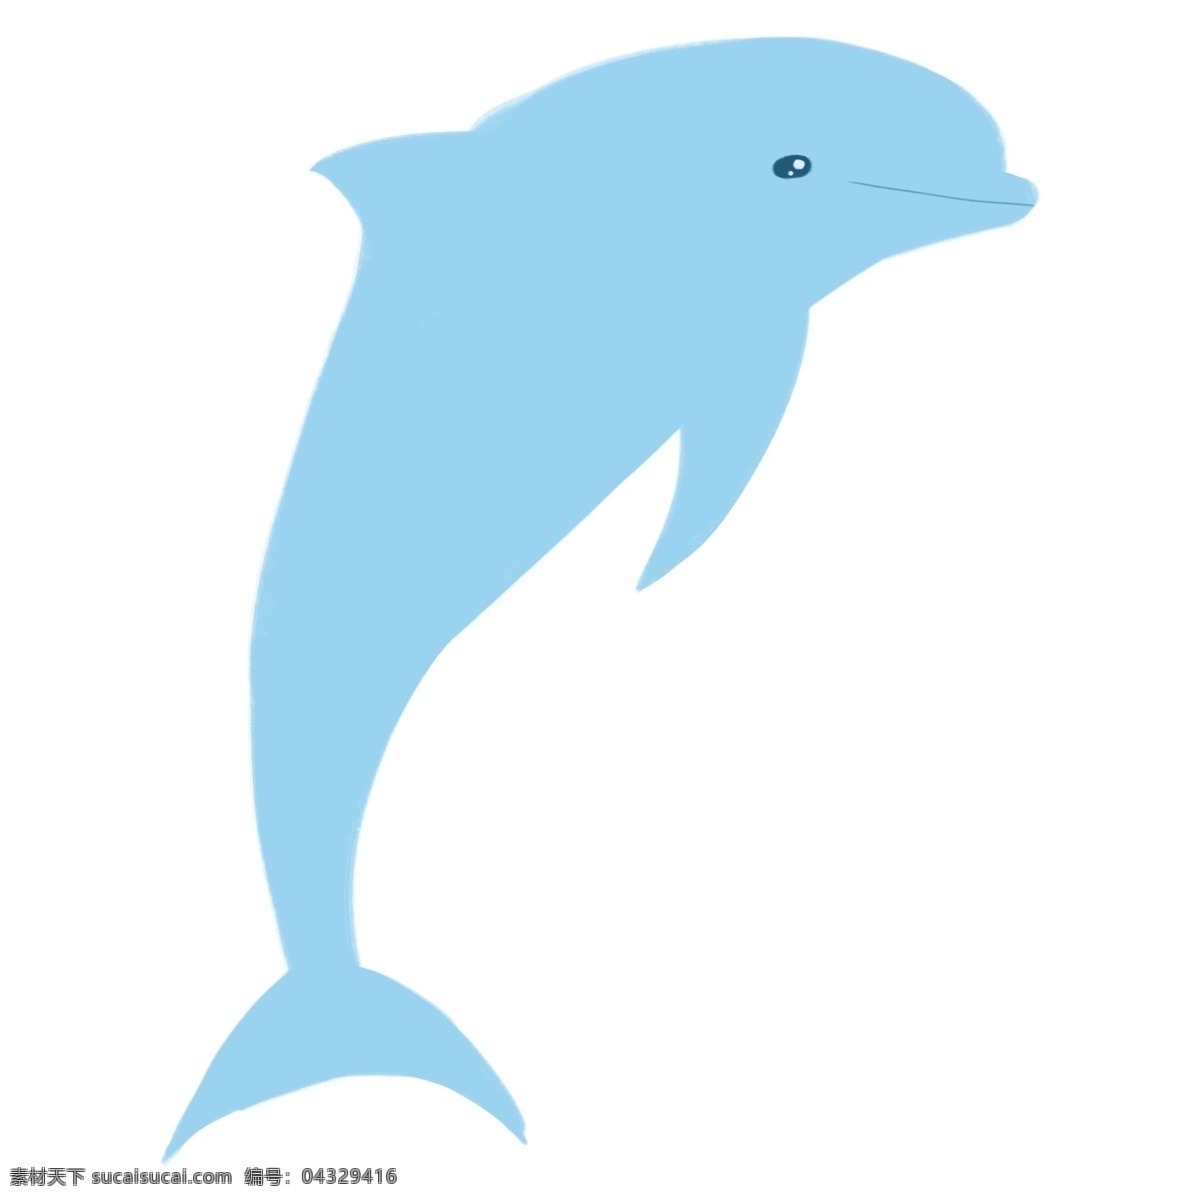 蓝色海豚 蓝色 浅蓝 海豚 动物 夏天 清凉 简约